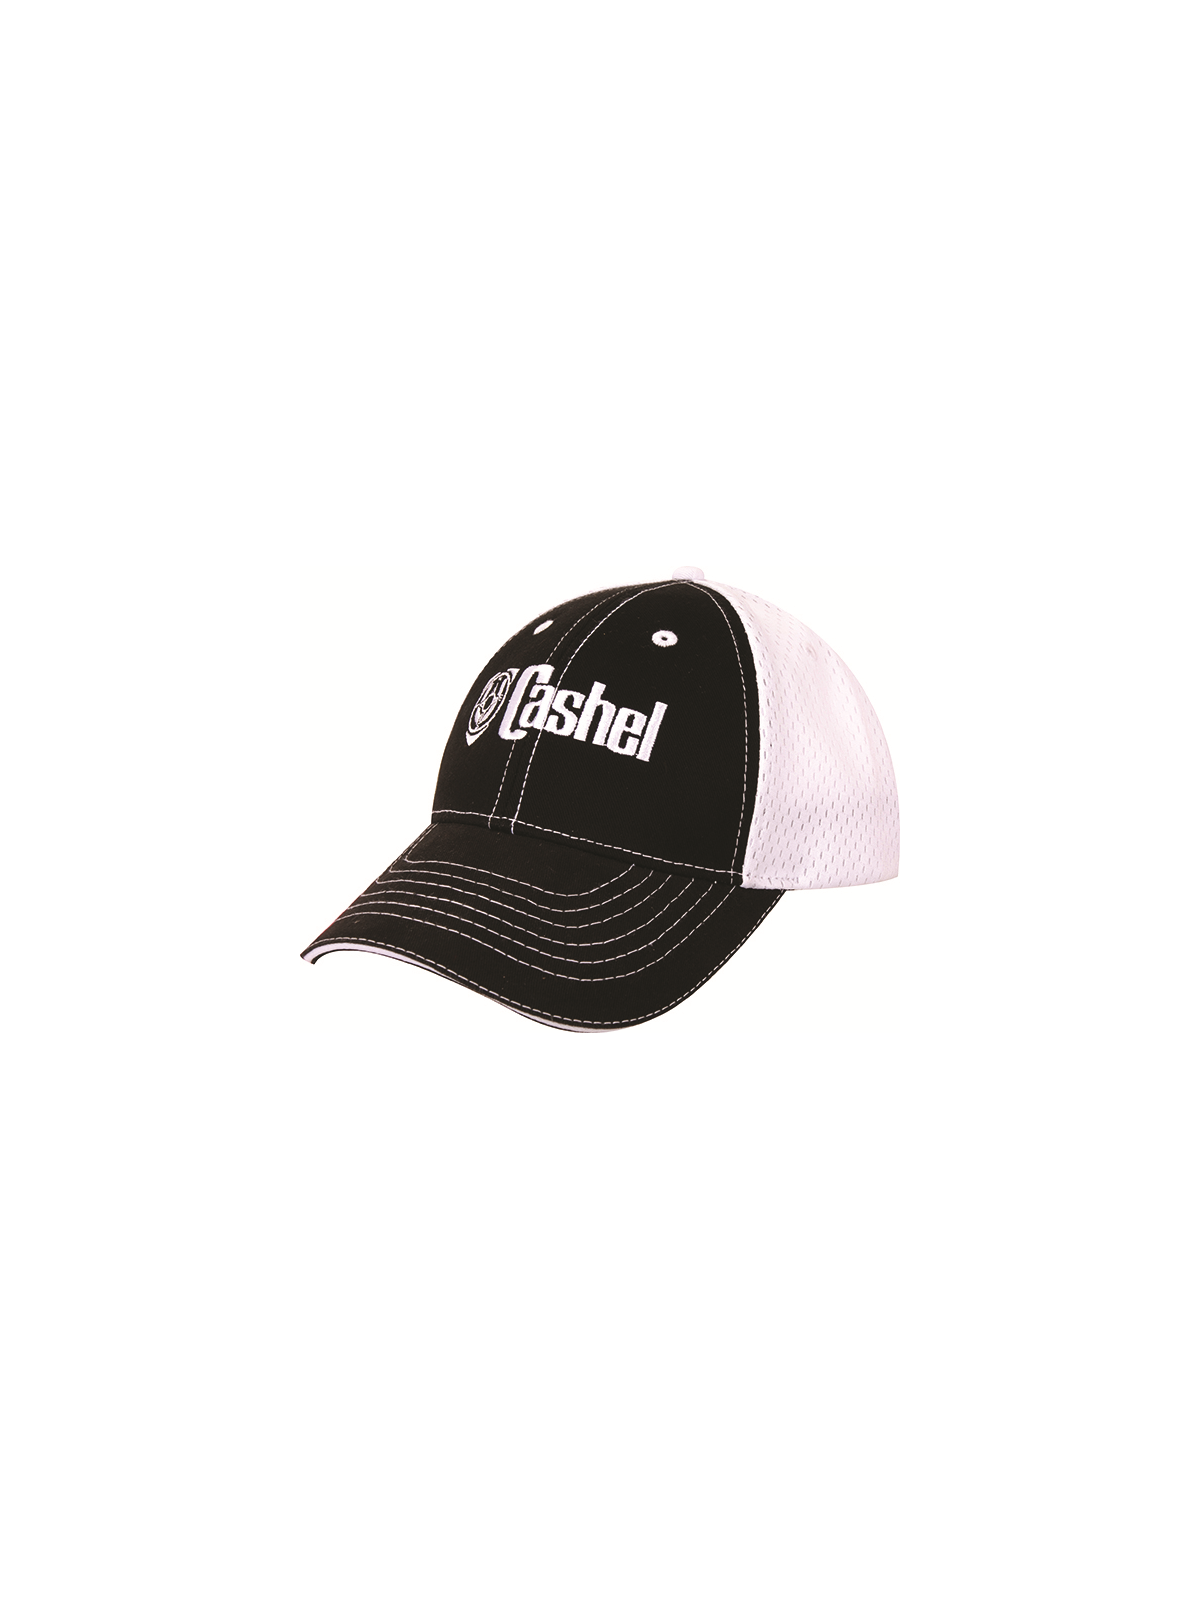 Cashel Baseball Cap schwarz weiss